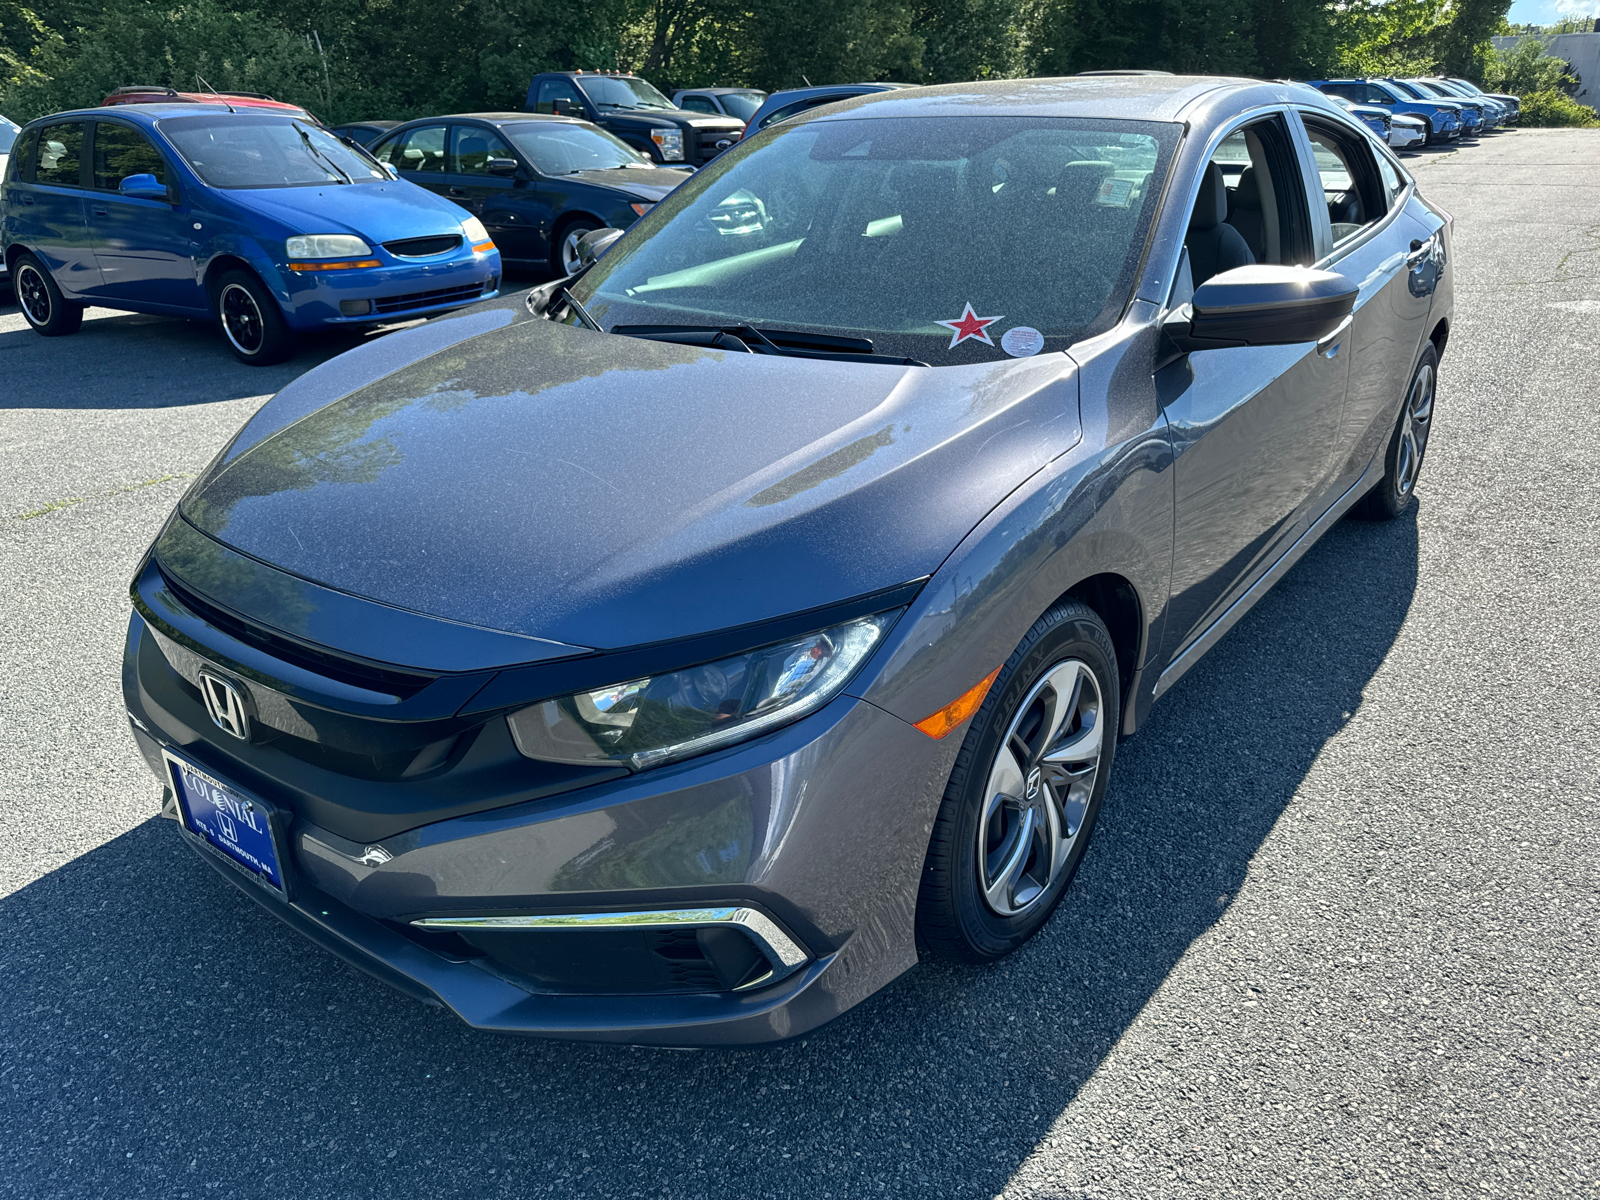 2020 Honda Civic LX 2